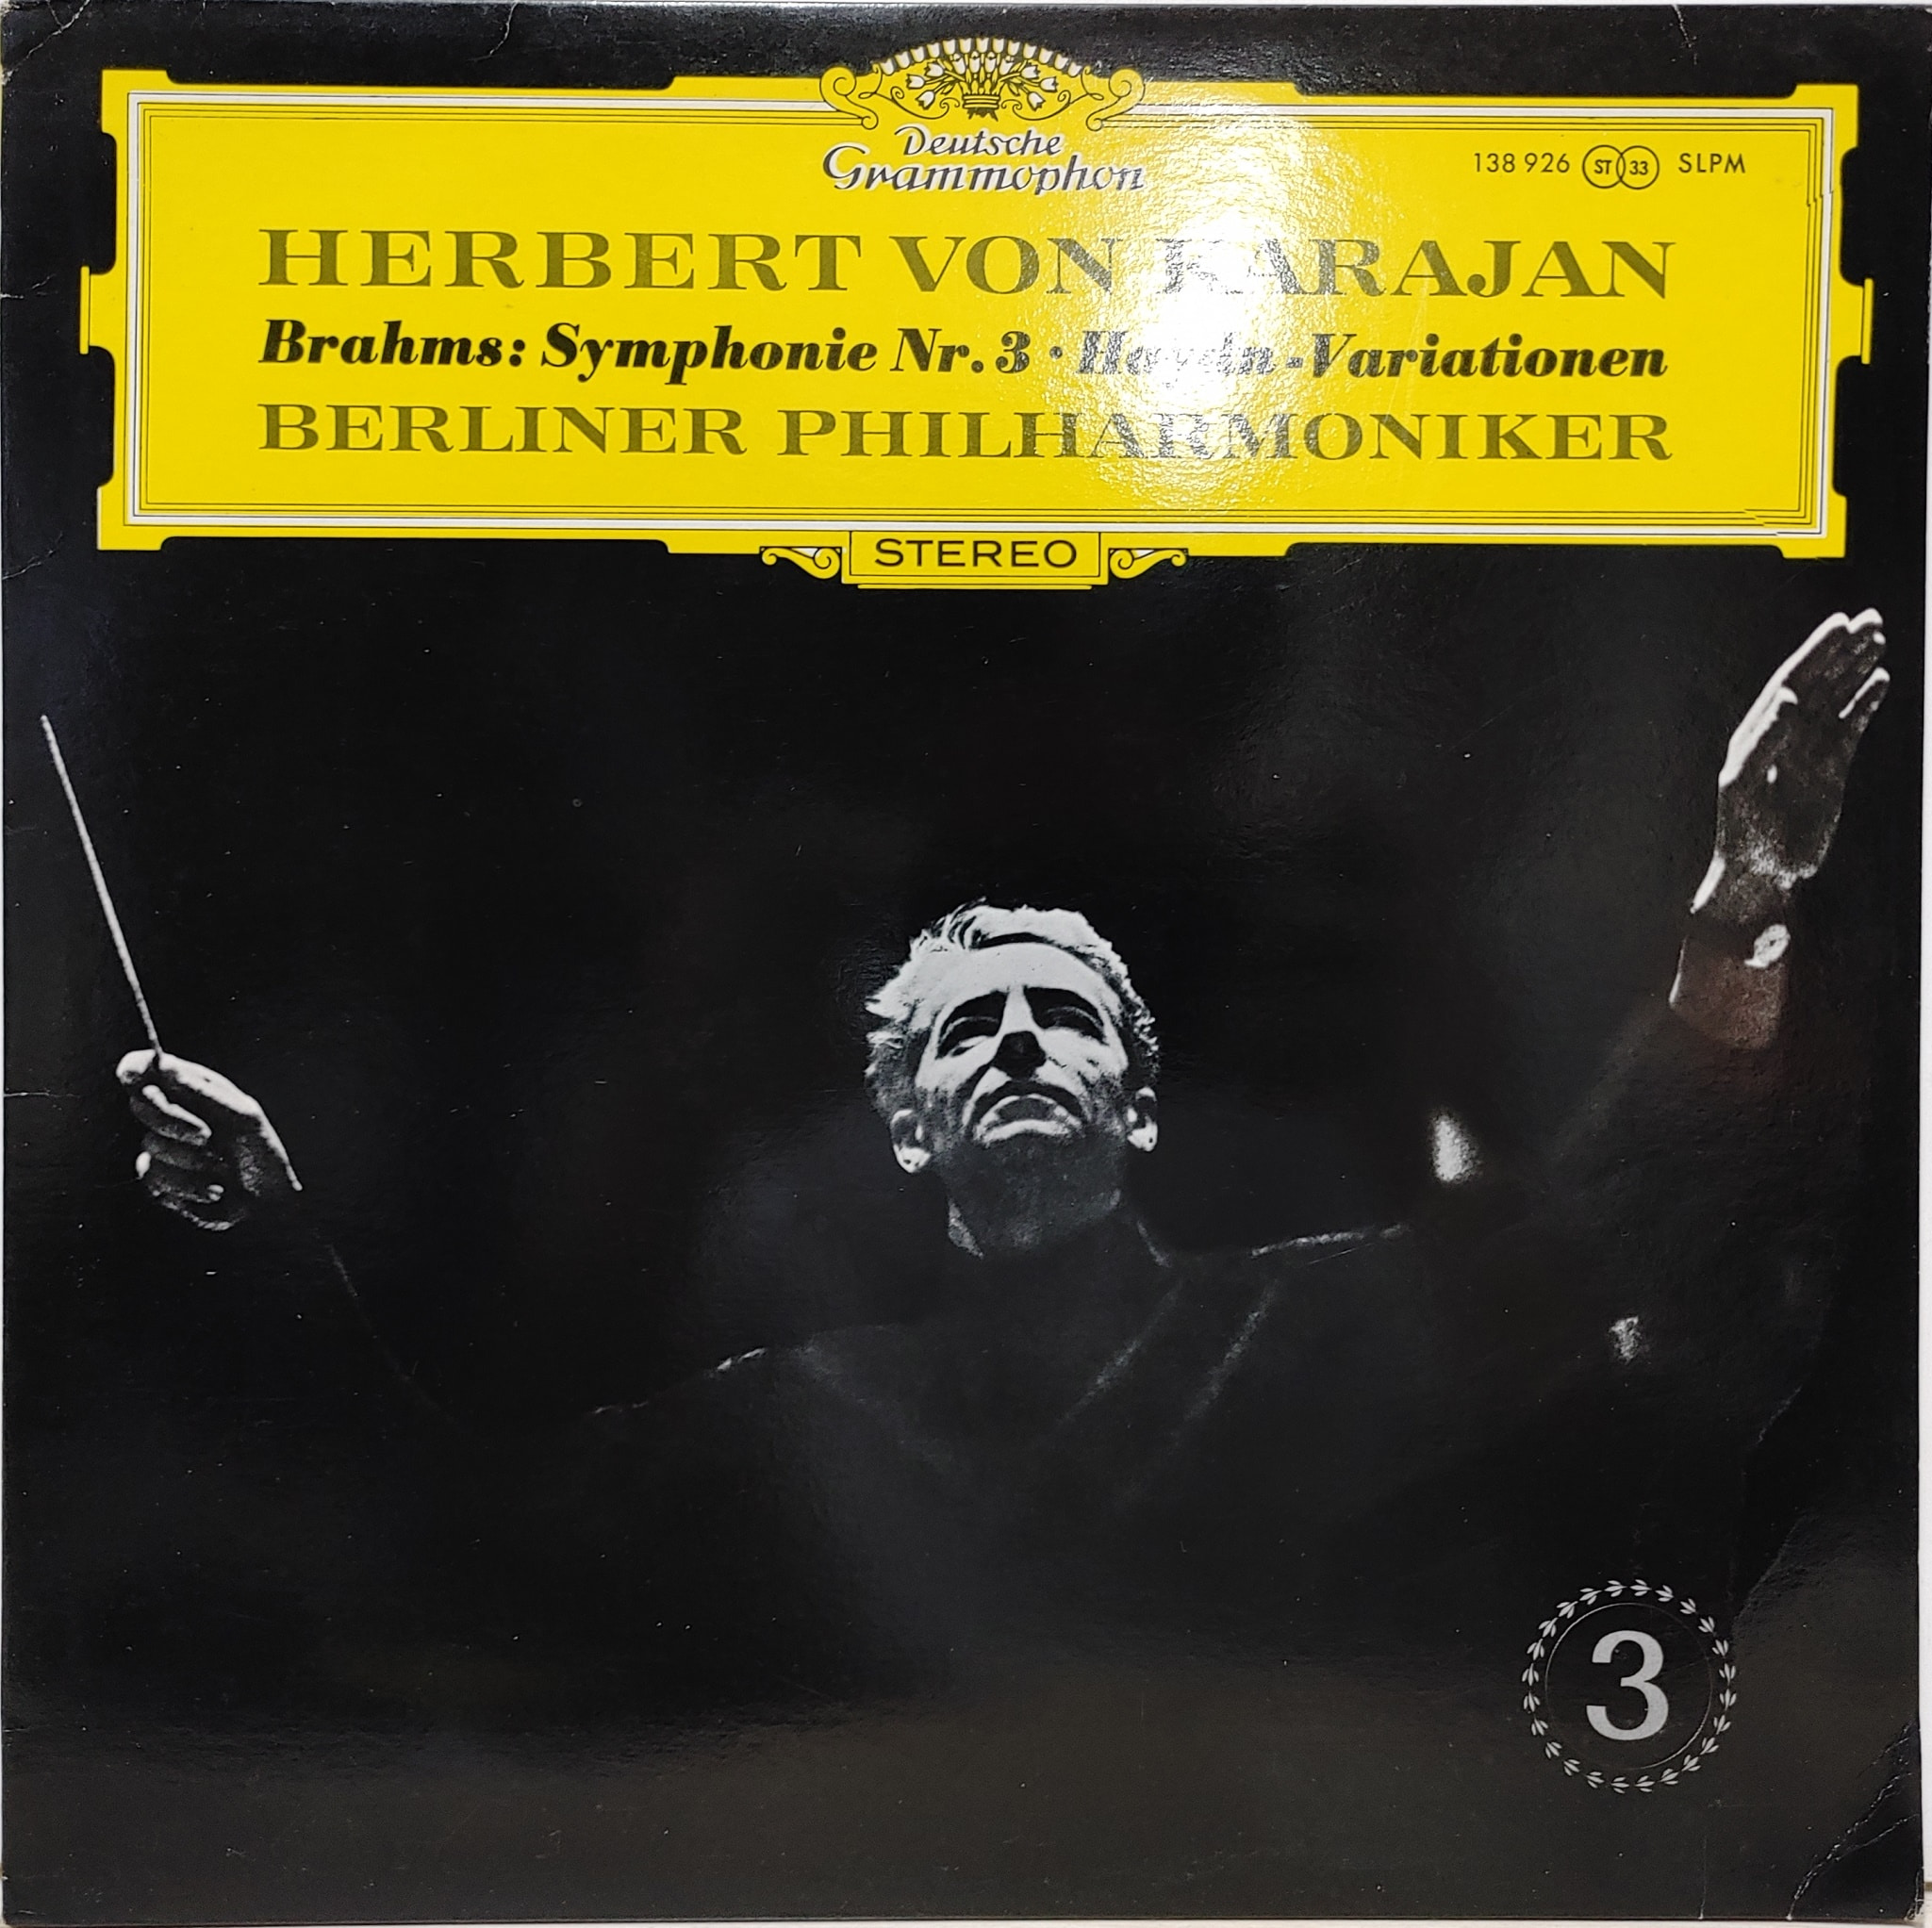 Brahms / Symphony No.3, Haydn-Variationen Herbert Von Karajan